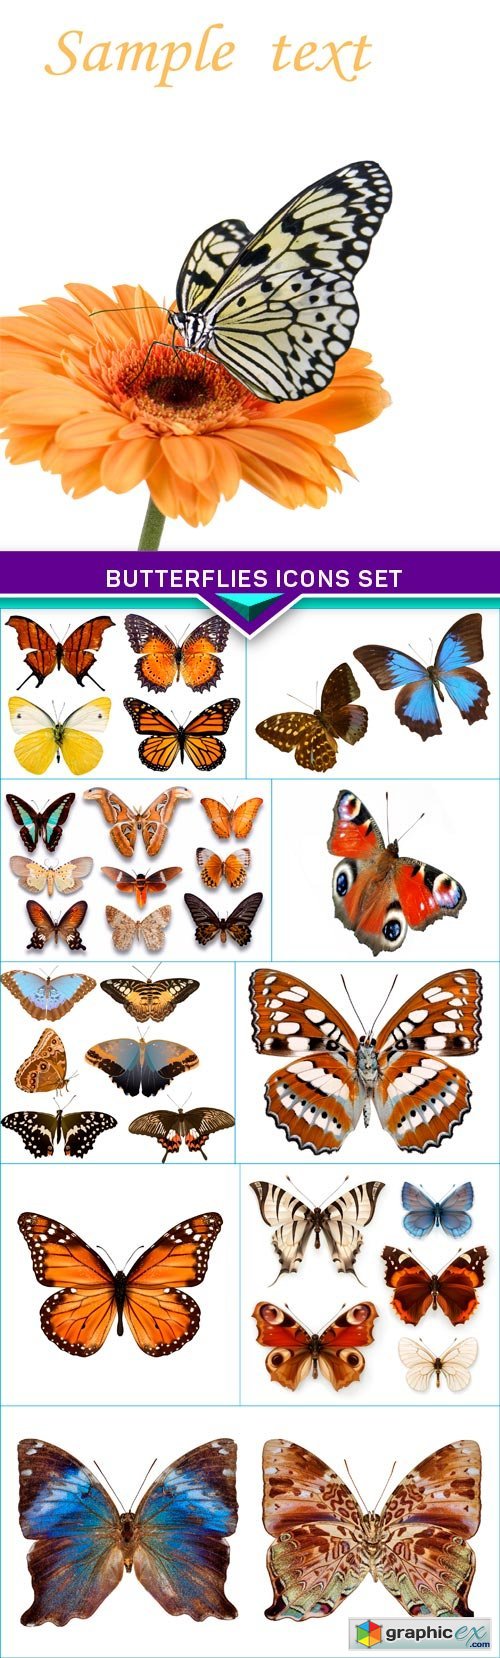 Butterflies icons set 10x JPEG